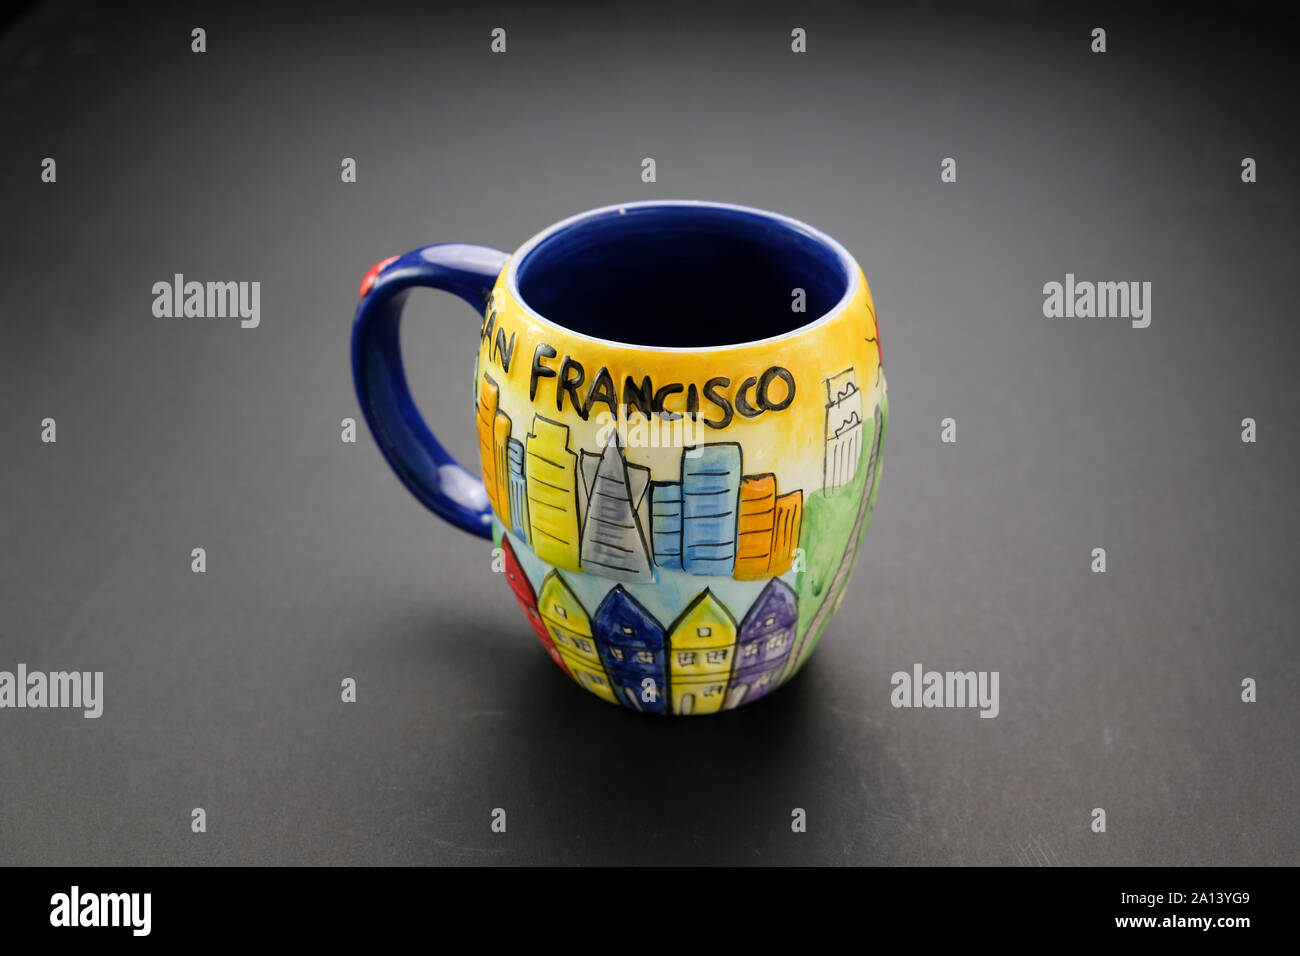 Farbenfrohe Kaffeetasse mit San Francisco-Schriftzug und blauer Blende auf dunklem Hintergrund Stockfoto